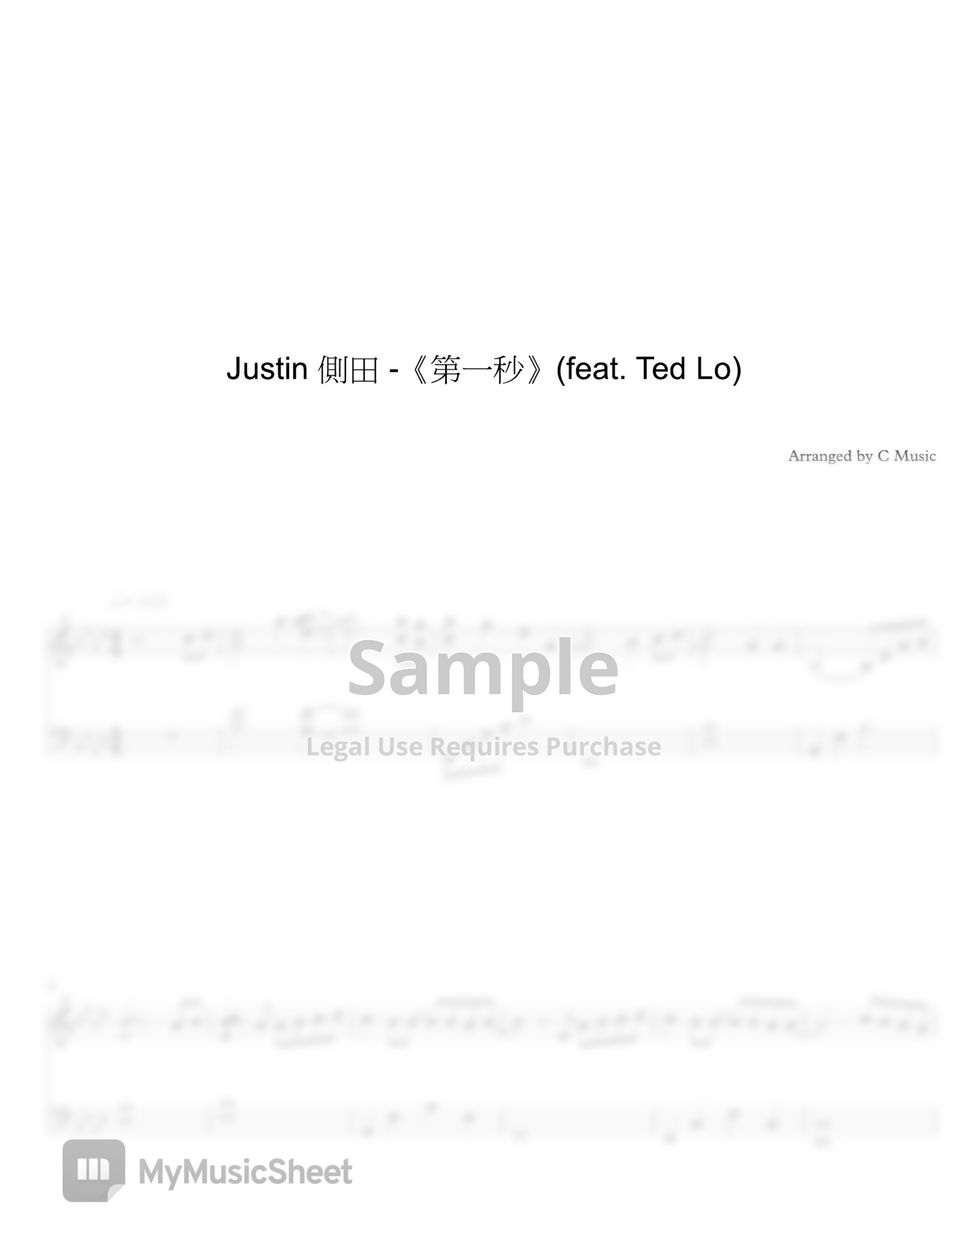 側田 Justin  feat. Ted Lo - 第一秒 by C Music